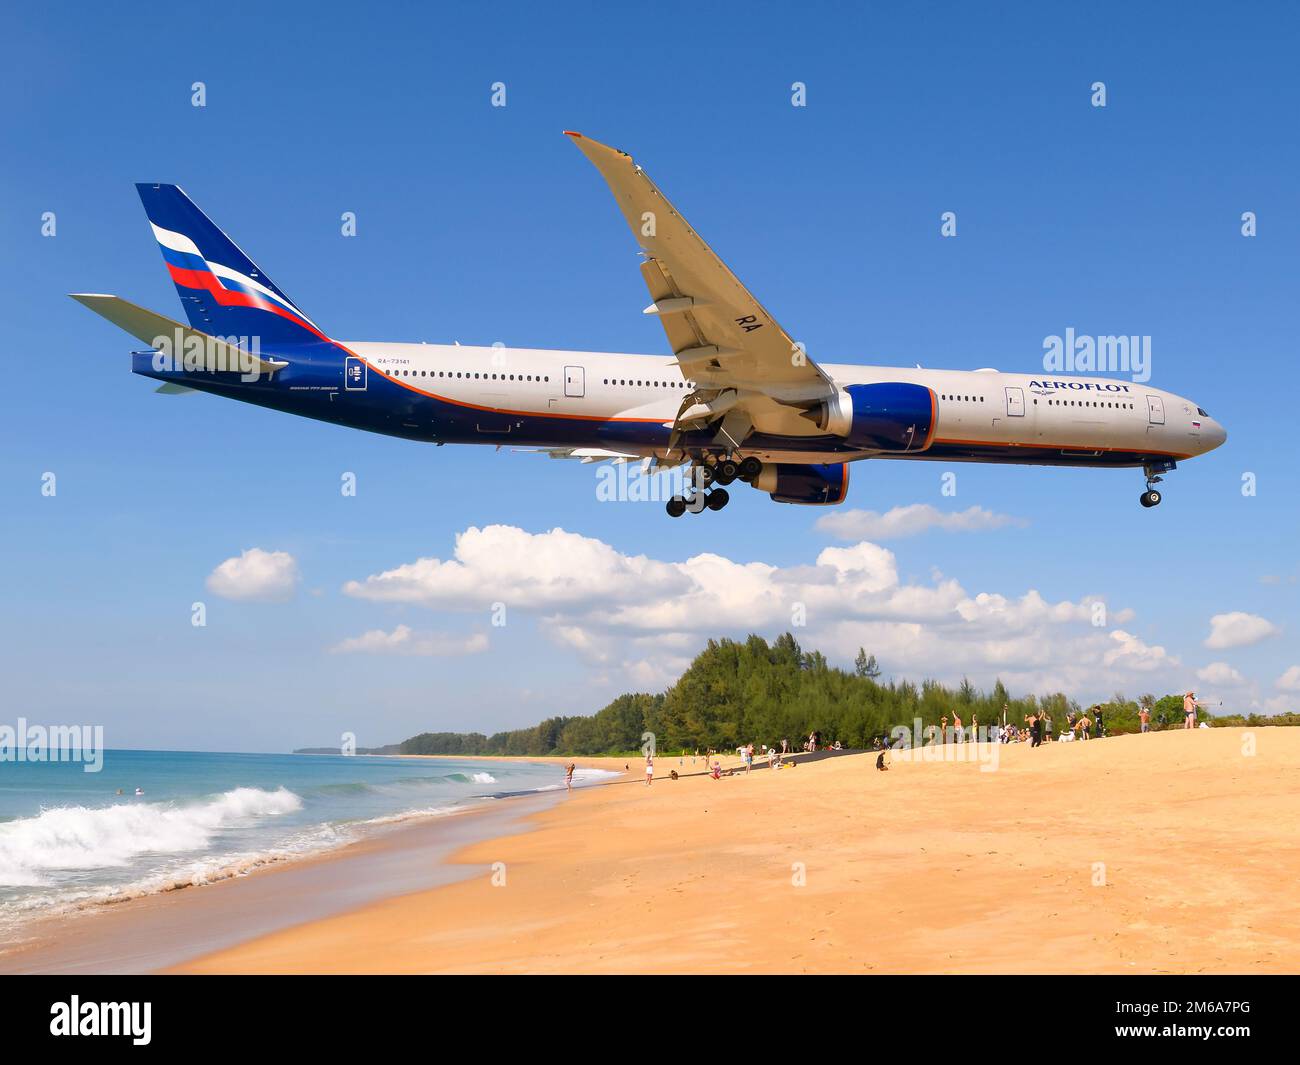 Aeroflot Boeing 777 über Mai Khao Beach in der Nähe des Flughafens Phuket, Thailand. Aeroflot Russian Airlines Boeing 777-300ER Flugzeug. Stockfoto